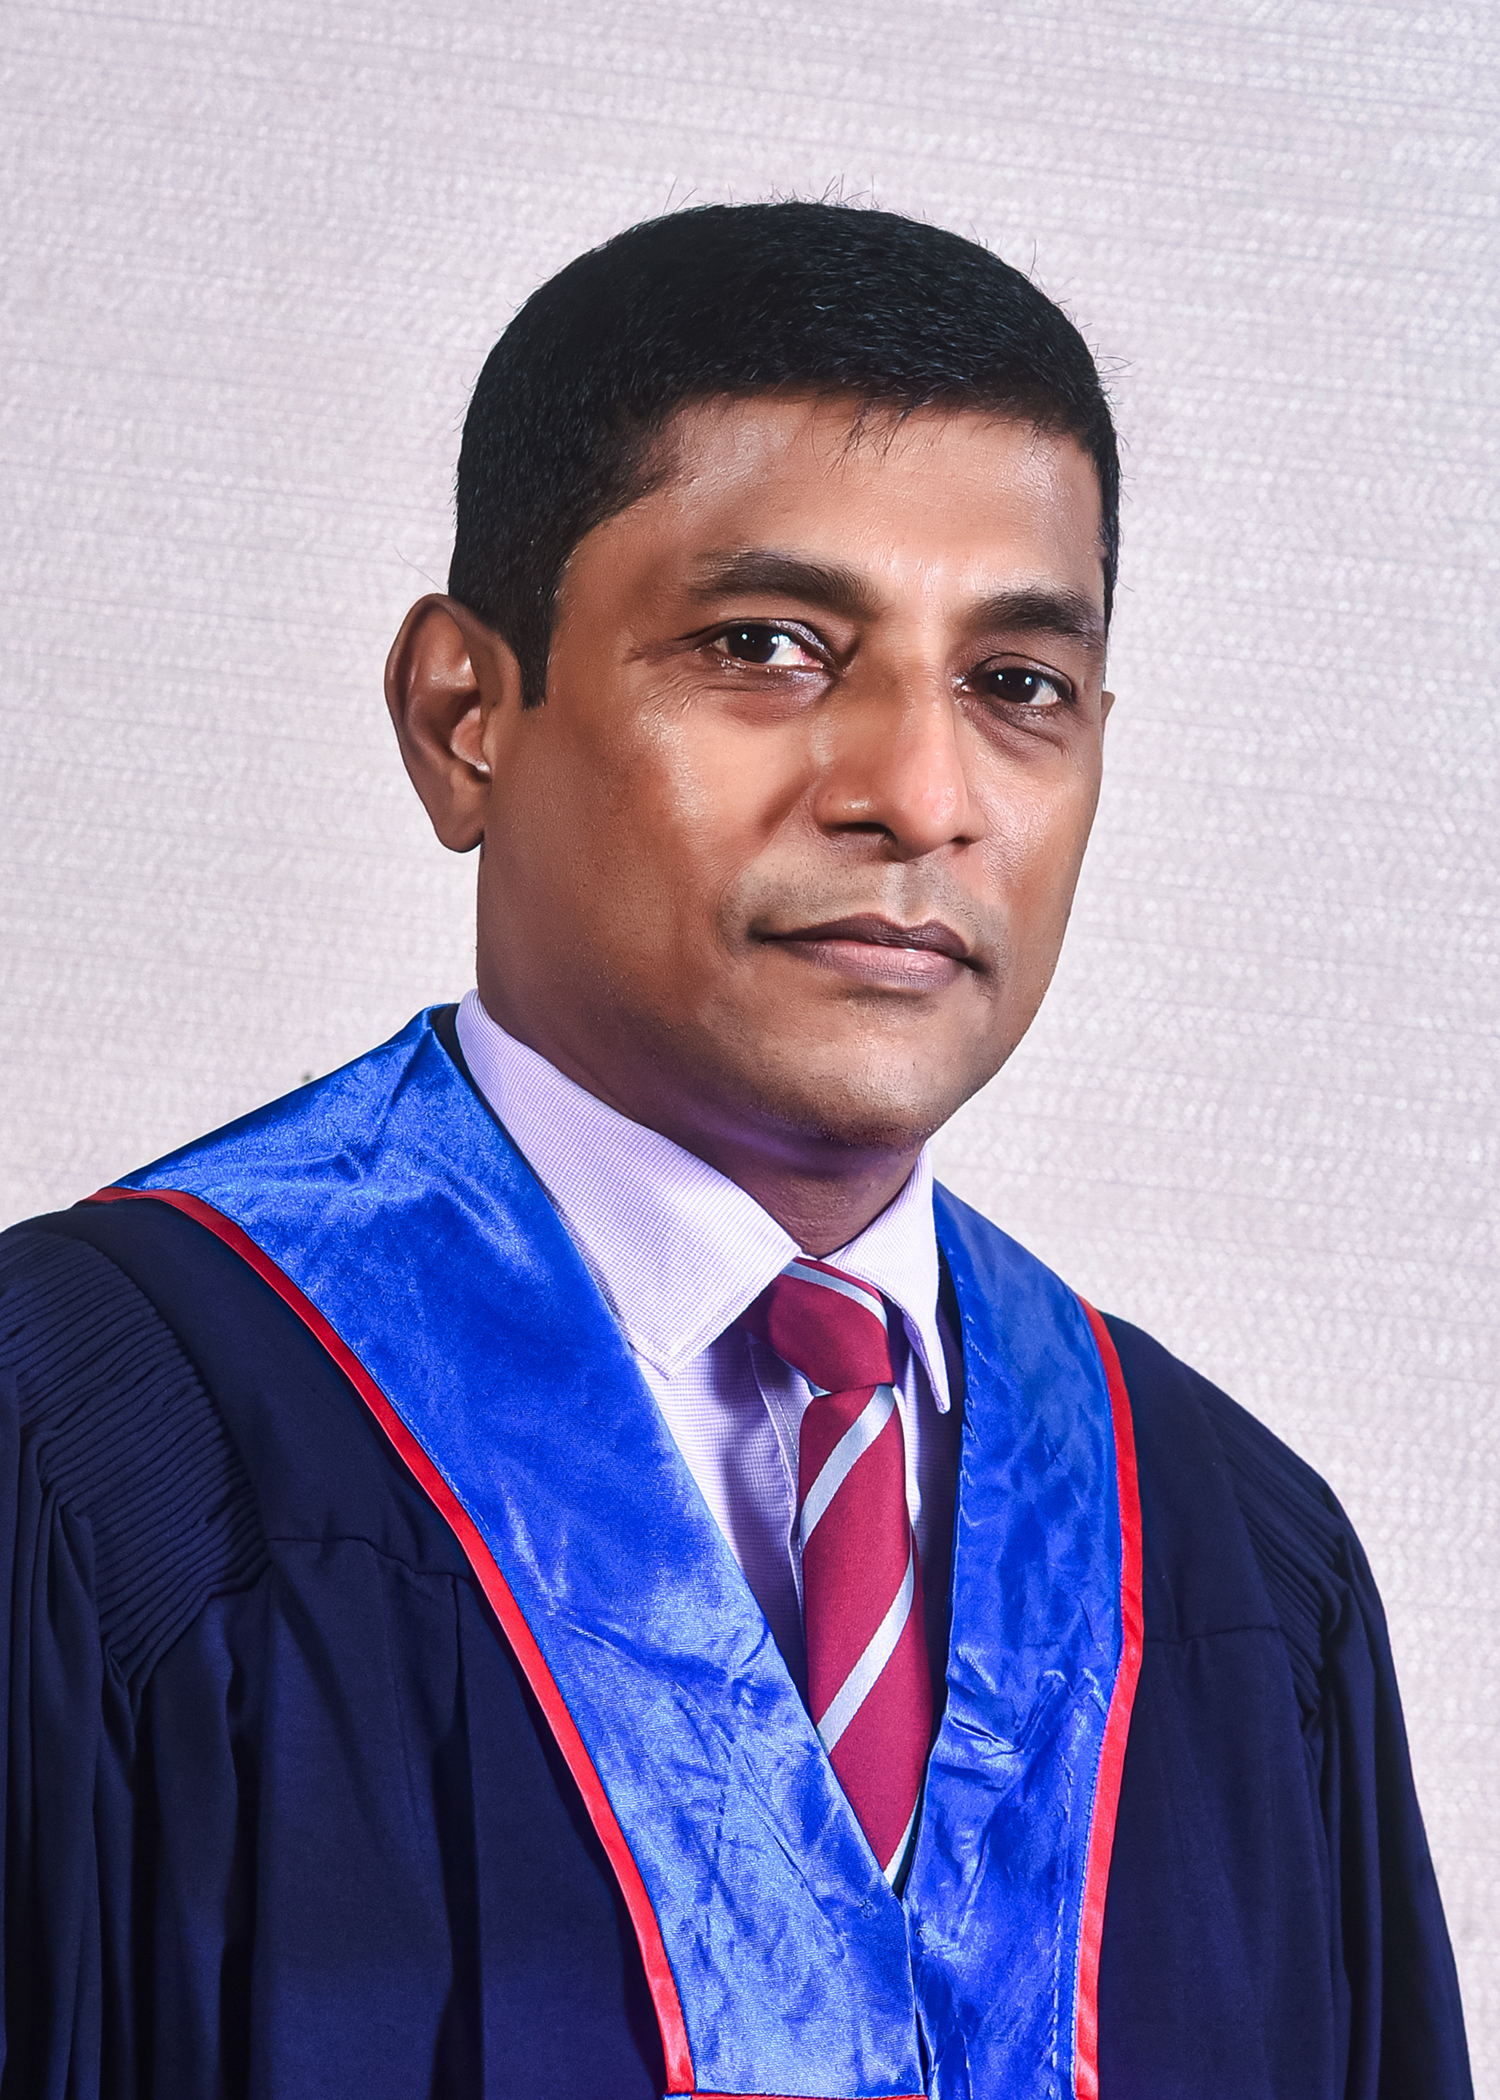 Dr. Kapila Jayaratne